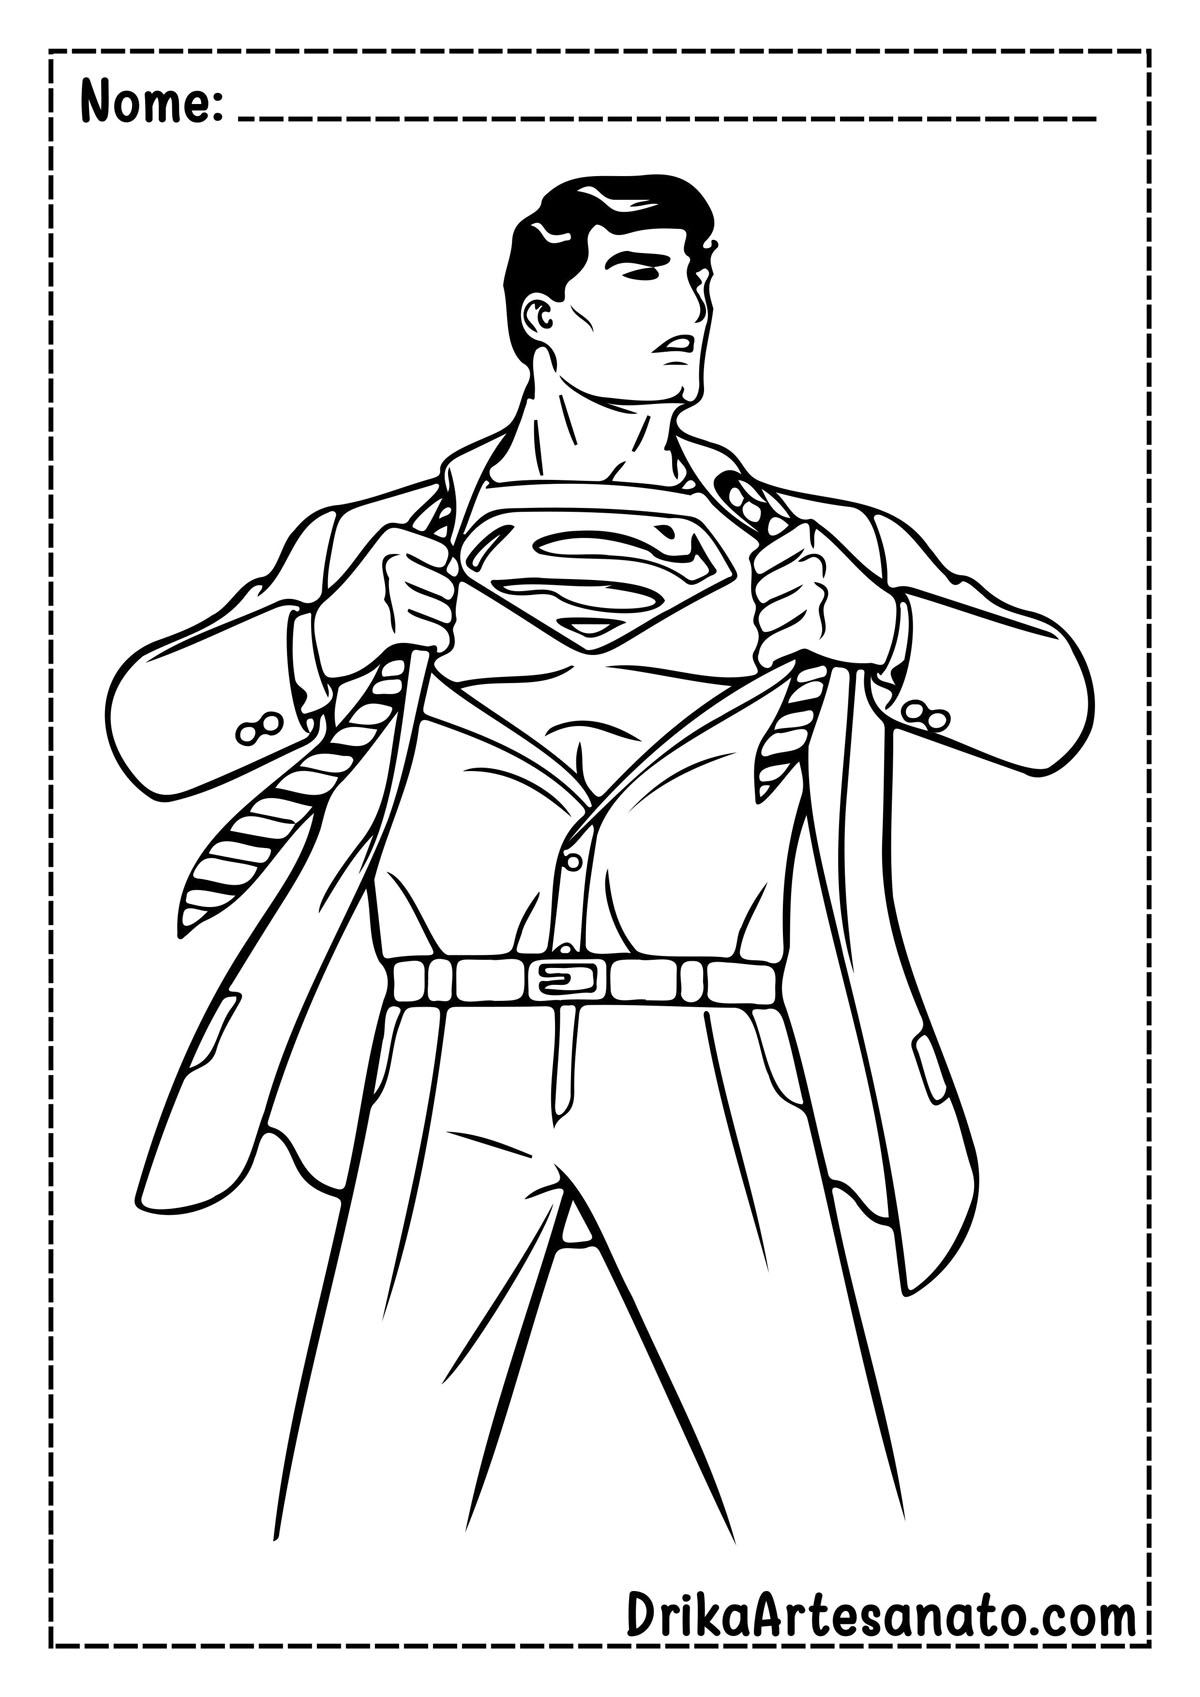 Desenho do Super Homem para Imprimir e Colorir